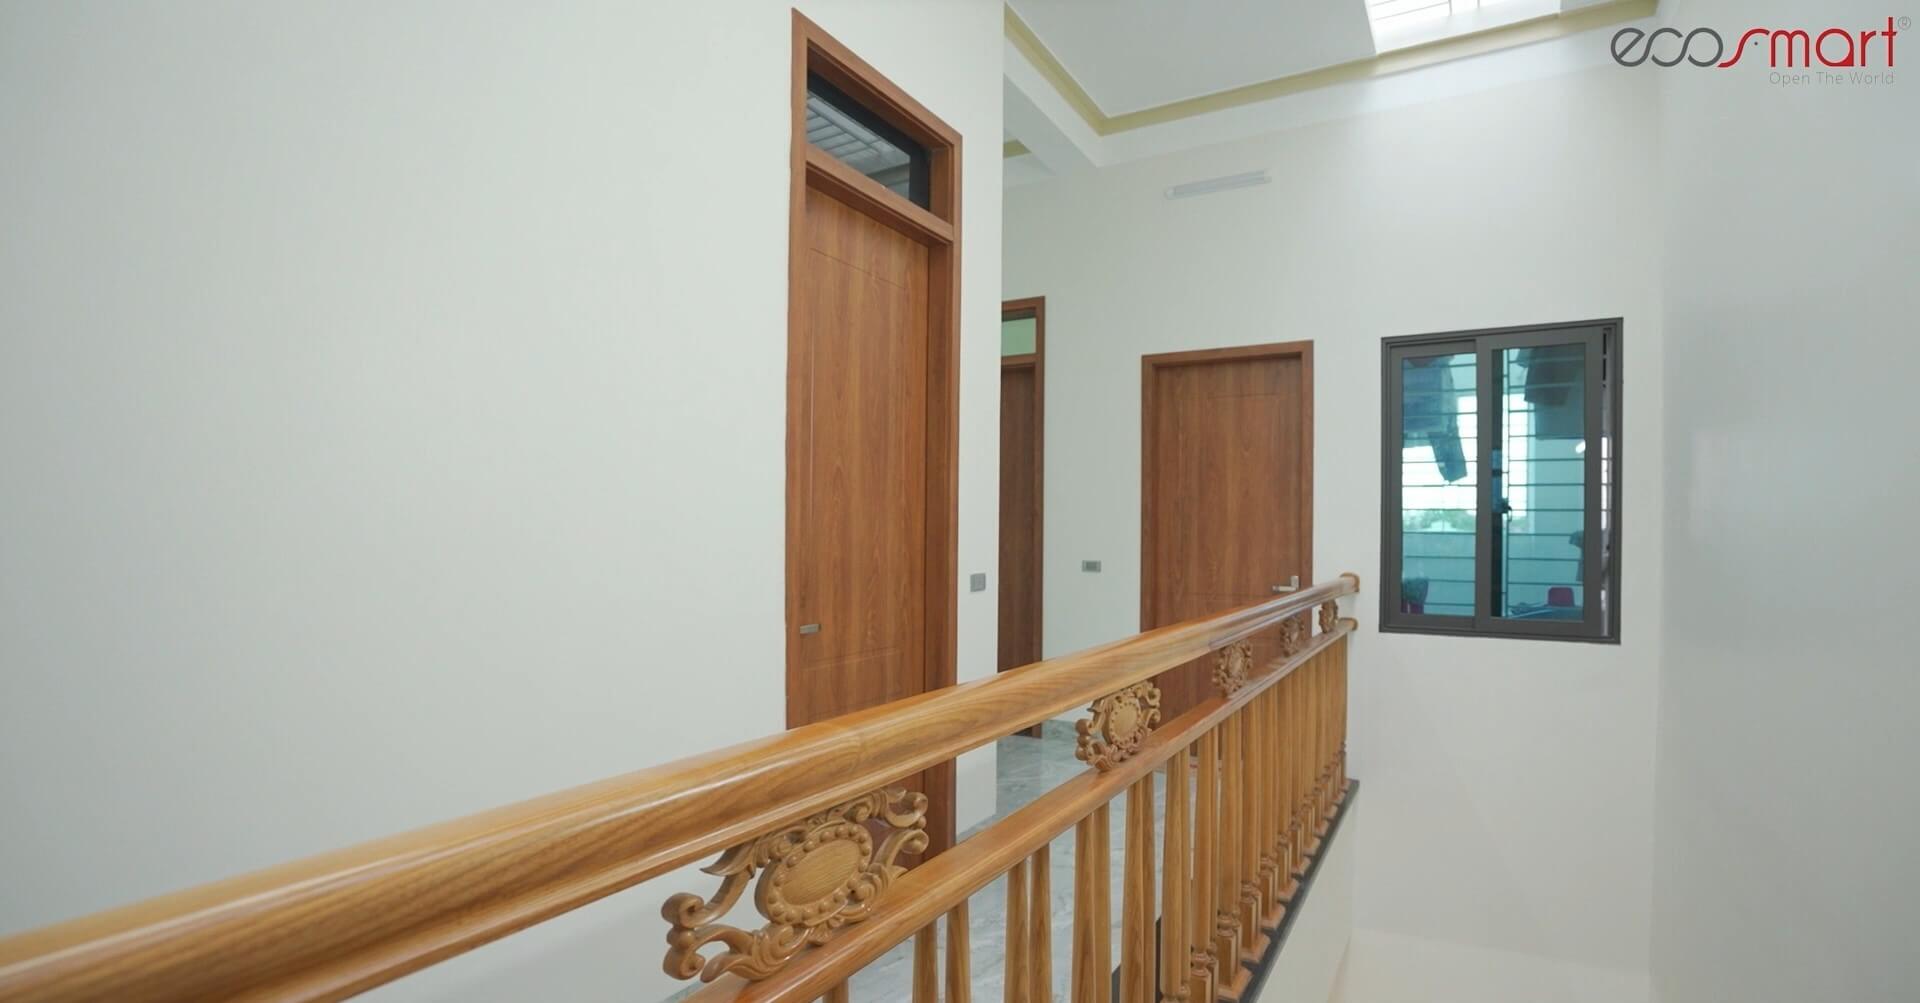 Hình ảnh cửa gỗ nhựa Composite Ecosmart lắp đặt tại Thanh Hóa